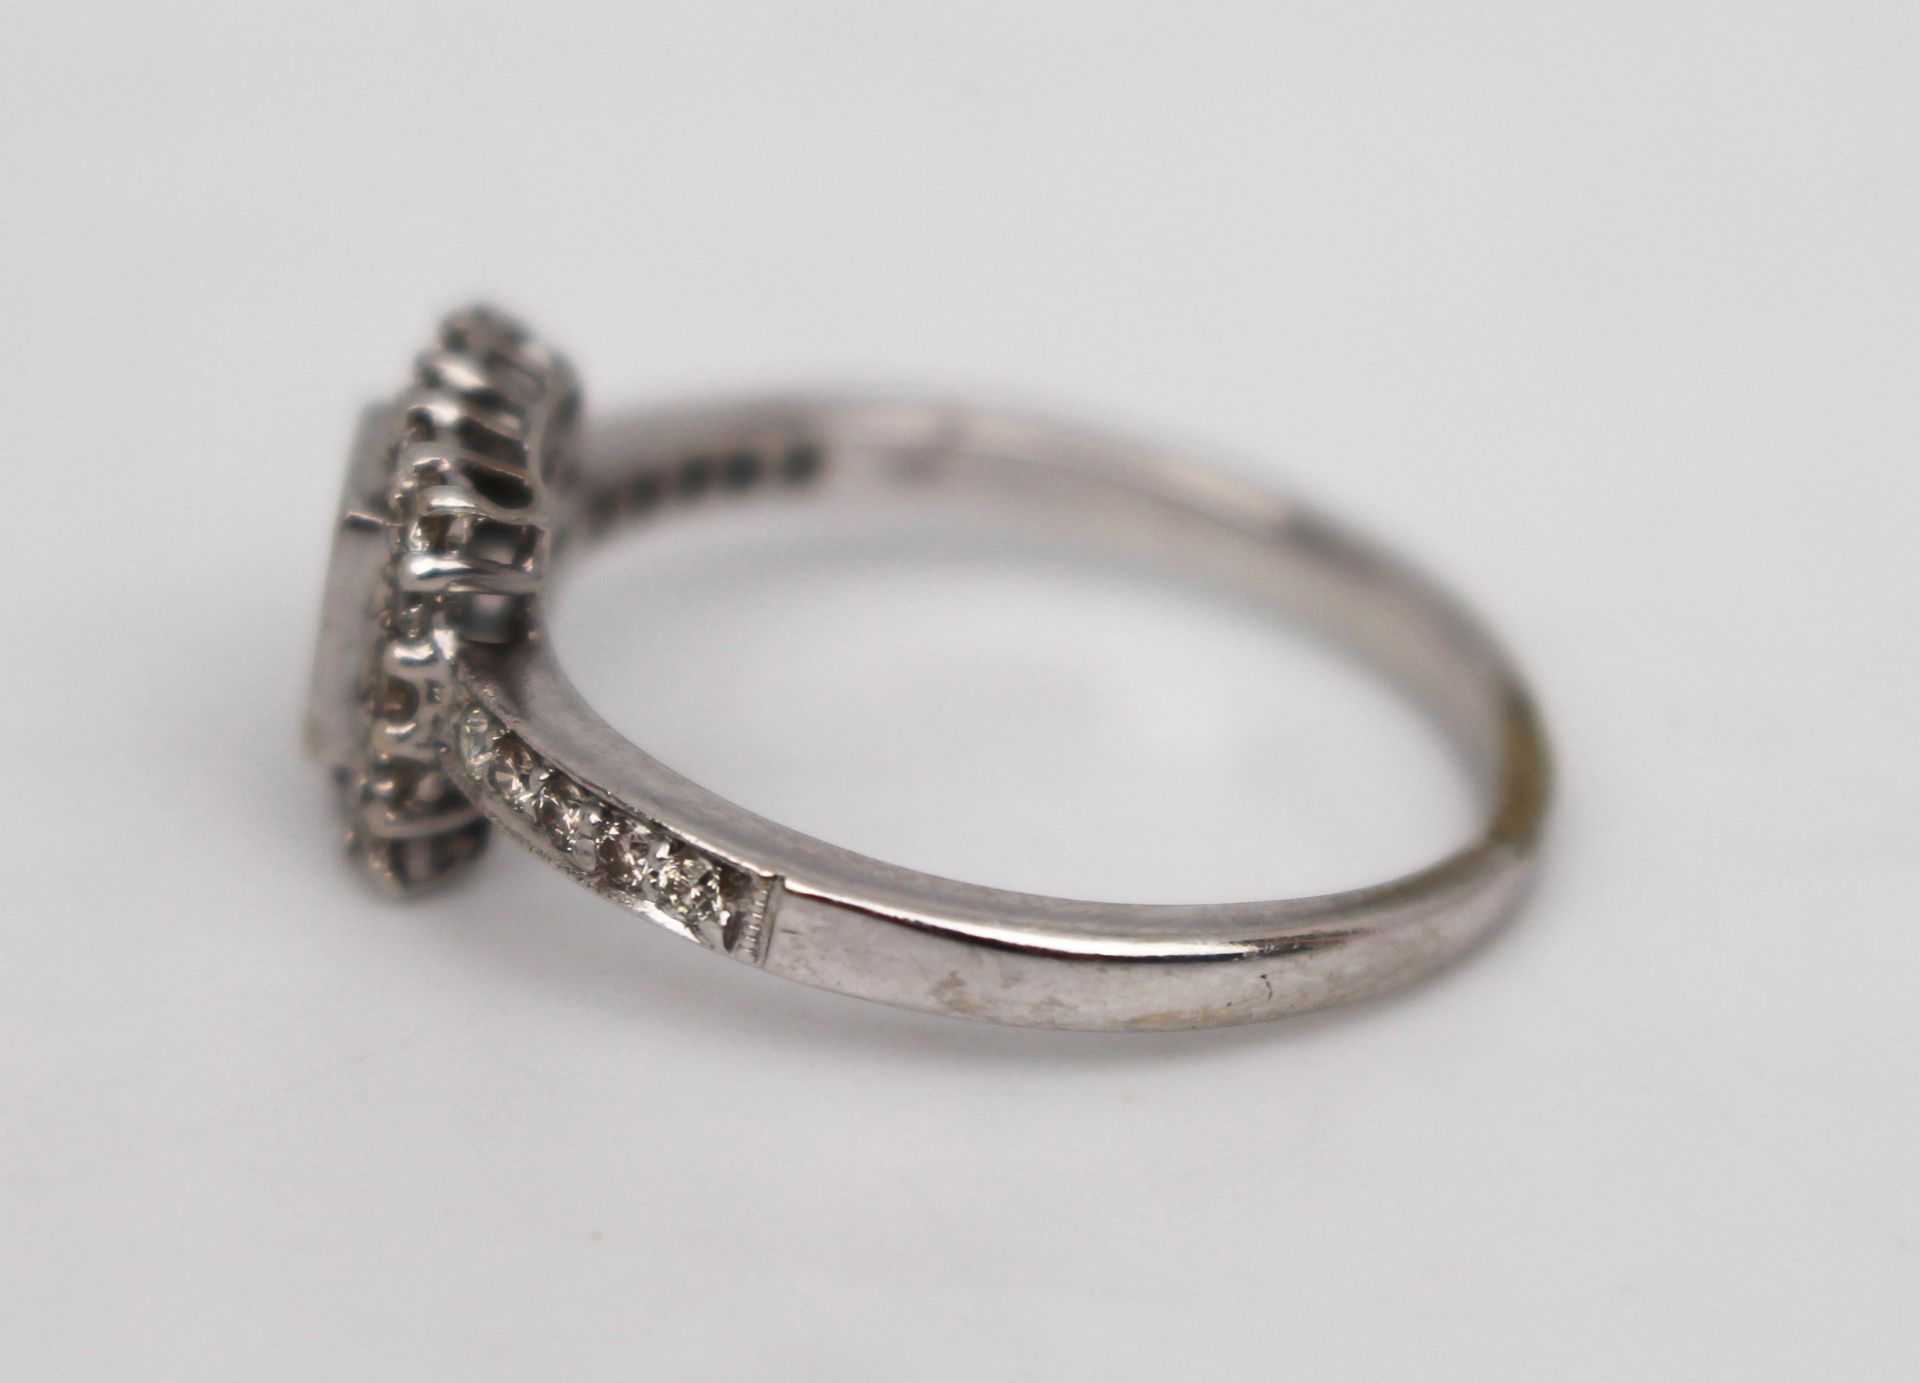 Diamond 18ct White Gold Ring 0.70 carat - Image 5 of 7